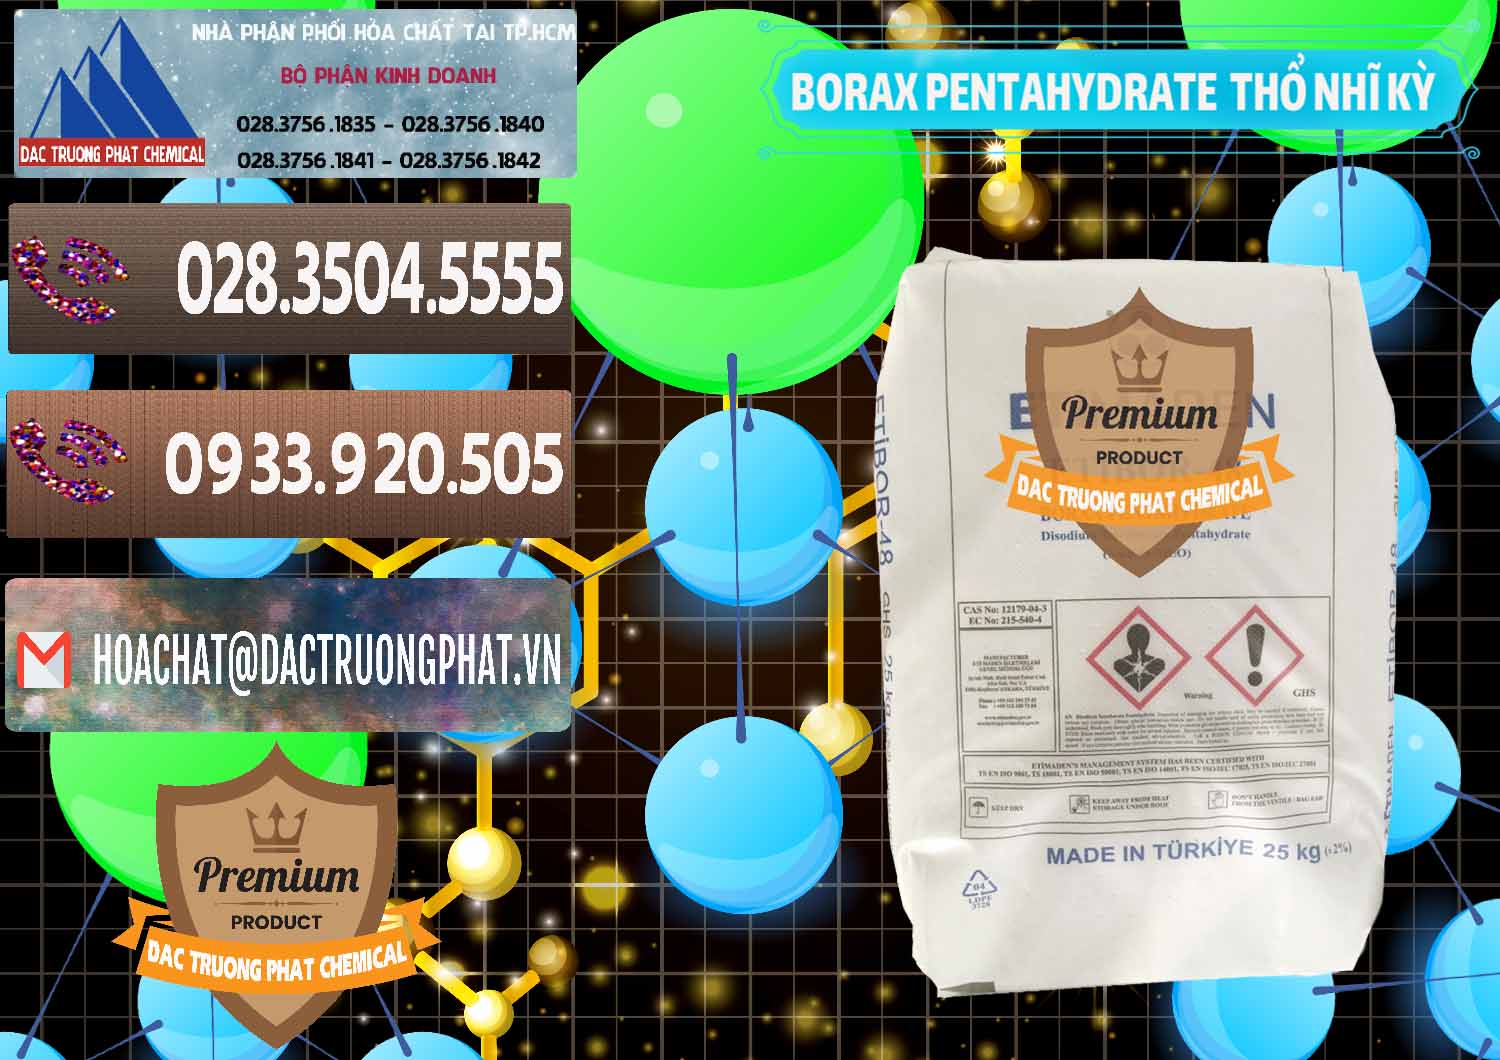 Cty chuyên kinh doanh - bán Borax Pentahydrate Thổ Nhĩ Kỳ Turkey - 0431 - Chuyên phân phối & cung cấp hóa chất tại TP.HCM - hoachatviet.net